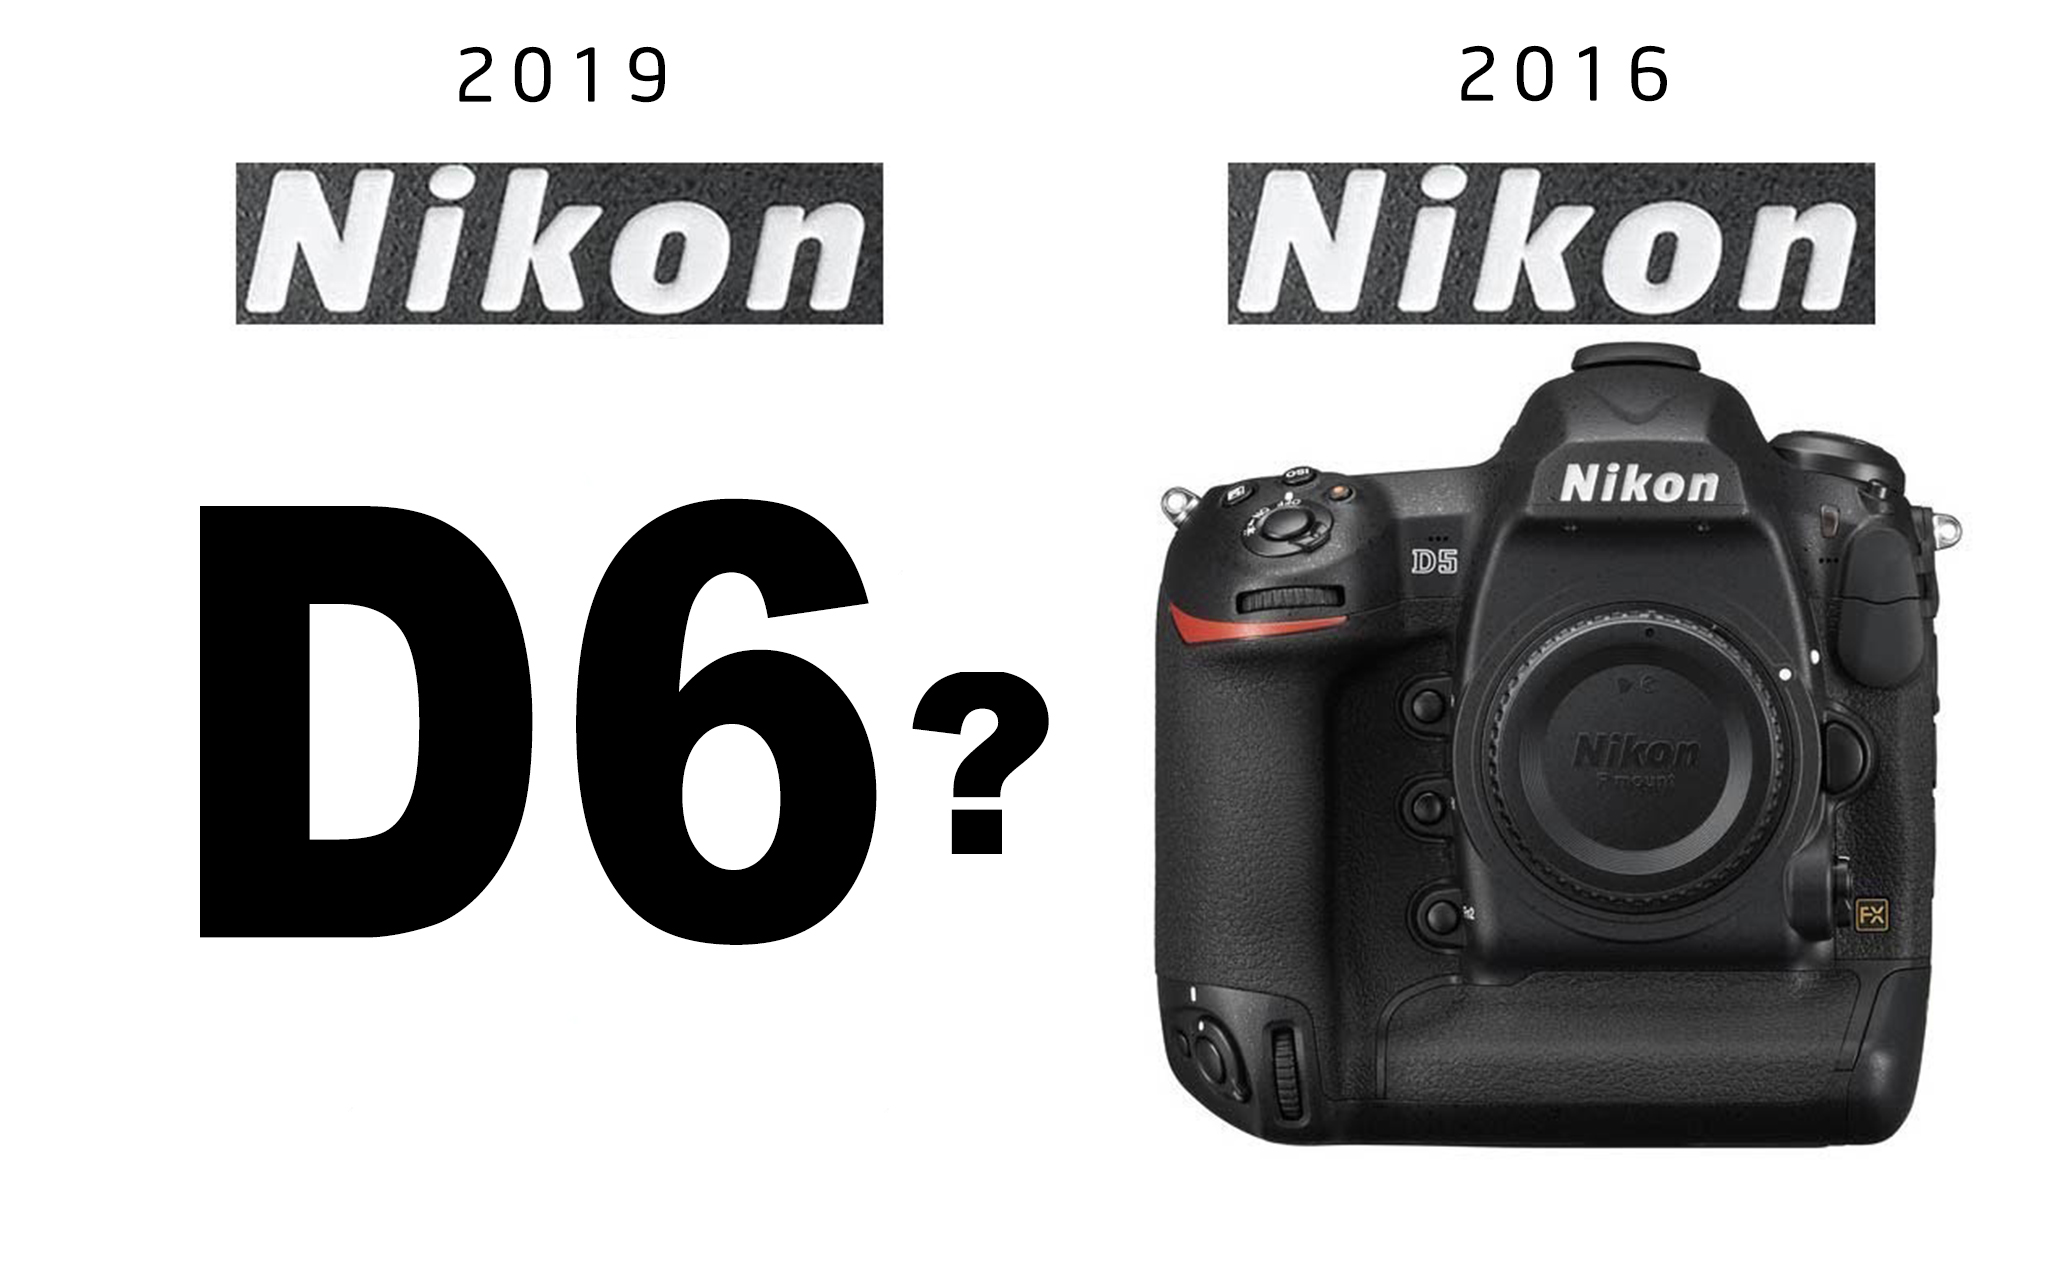 Nikon sẽ có một máy ảnh mới sử dụng thẻ CF Express trong Quí 2/2019, phải chăng là Nikon D6?